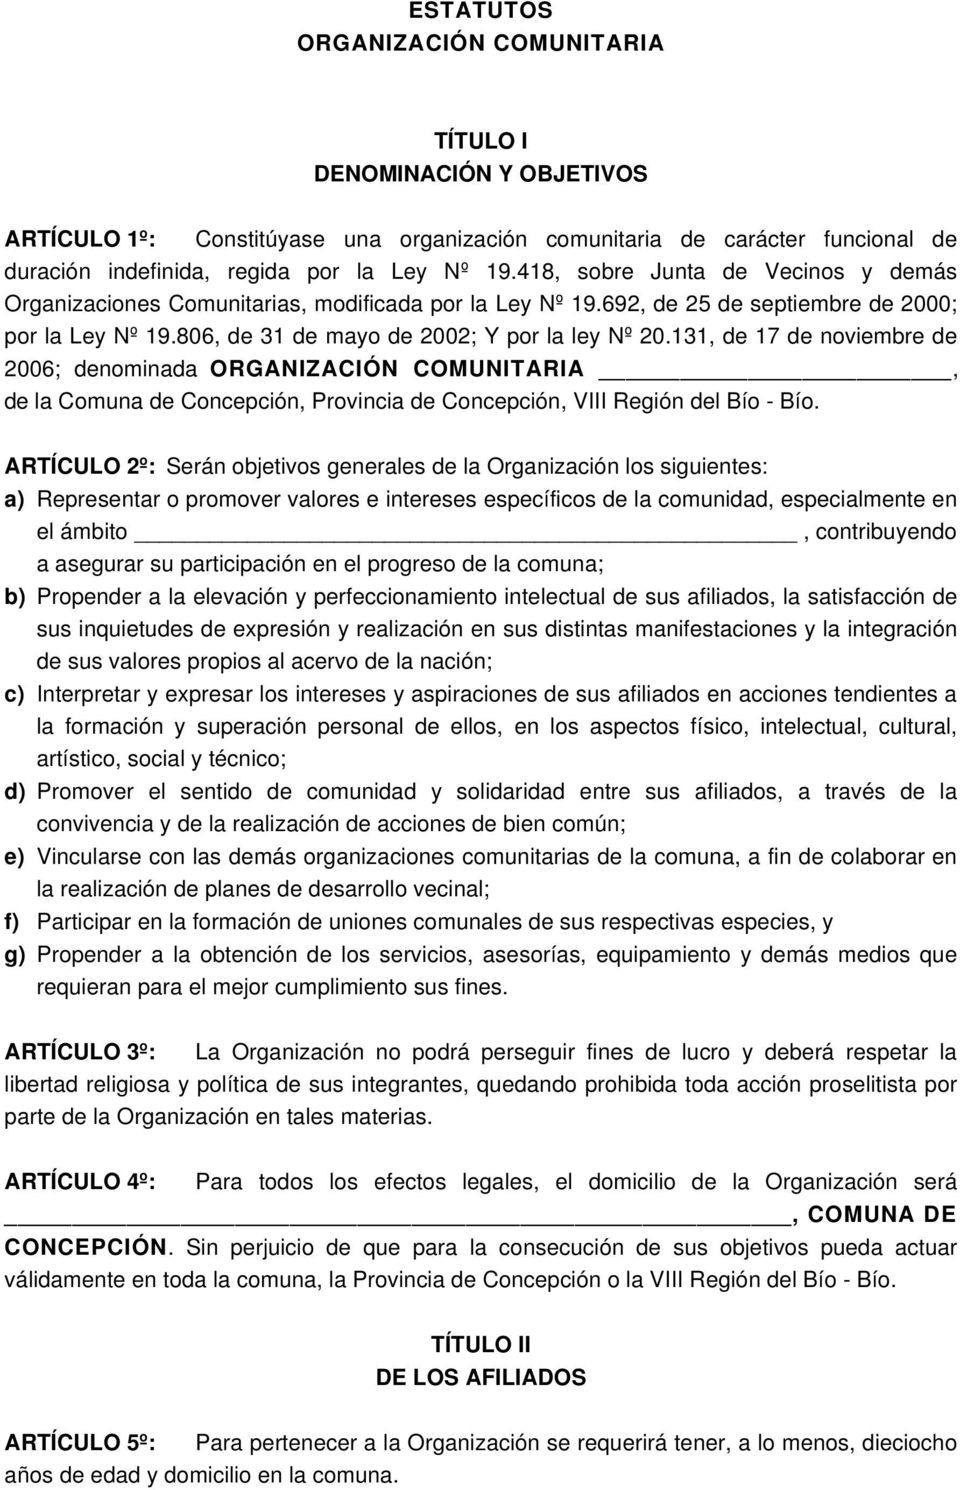 131, de 17 de noviembre de 2006; denominada ORGANIZACIÓN COMUNITARIA, de la Comuna de Concepción, Provincia de Concepción, VIII Región del Bío - Bío.